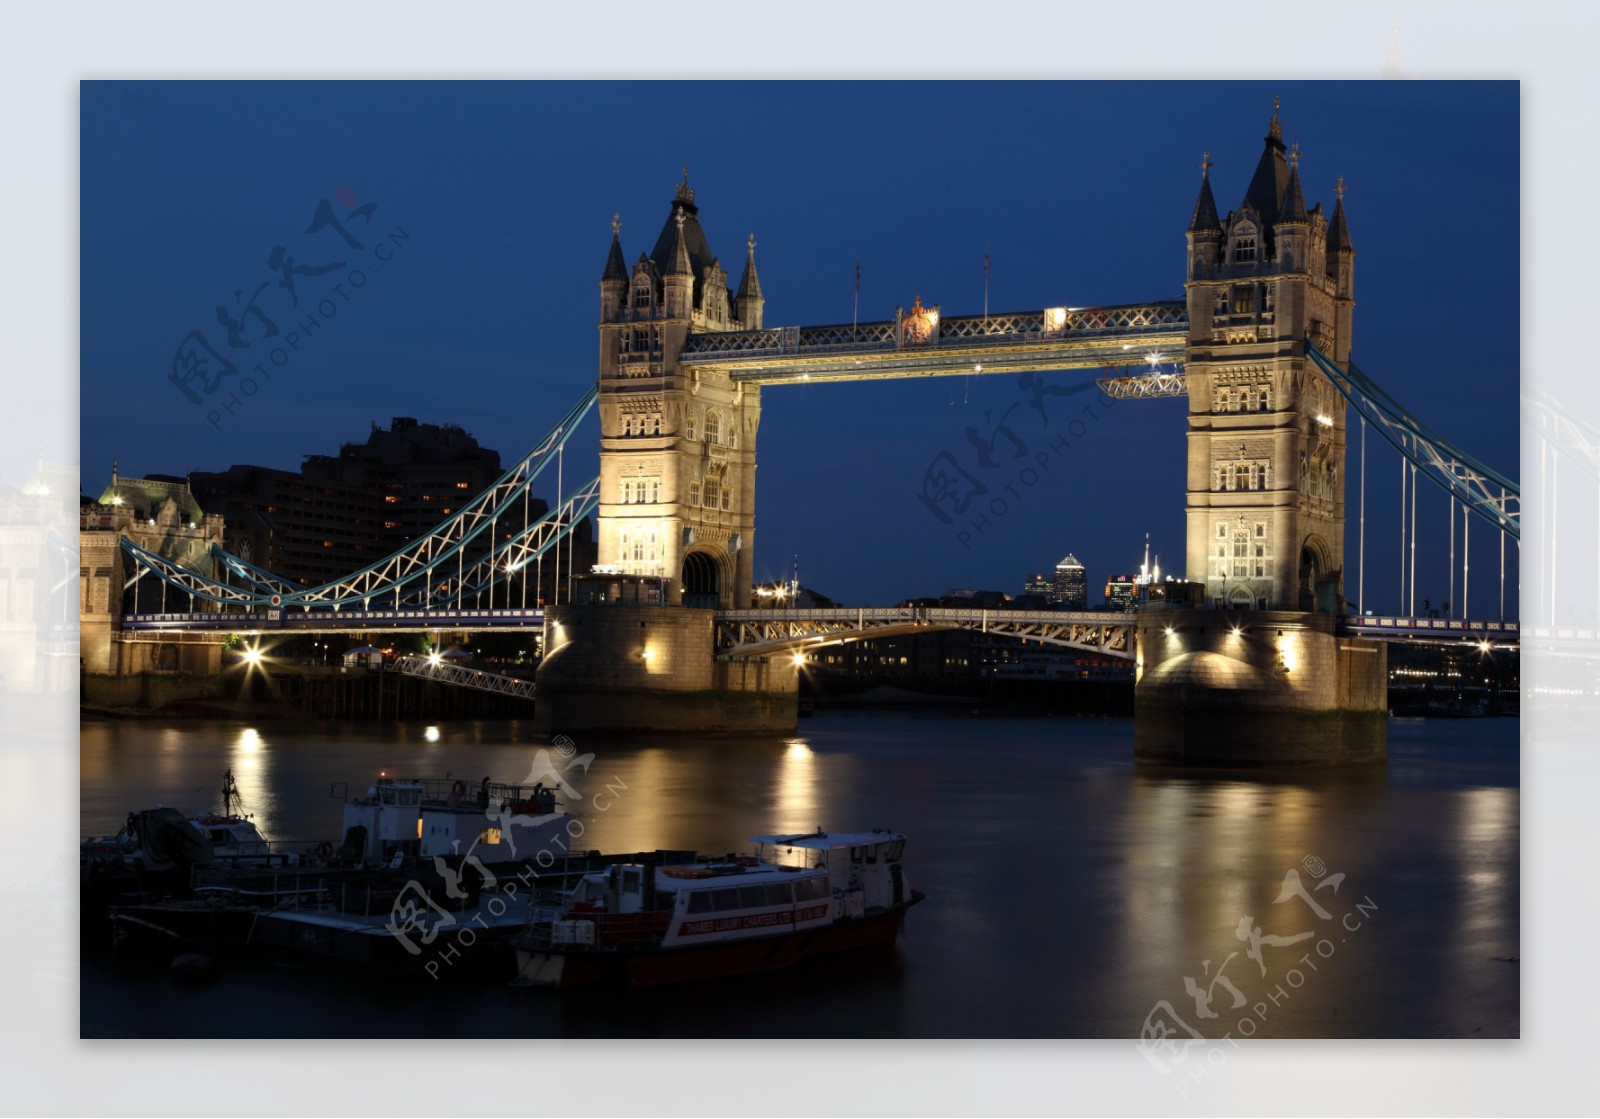 英国伦敦塔桥夜景图片